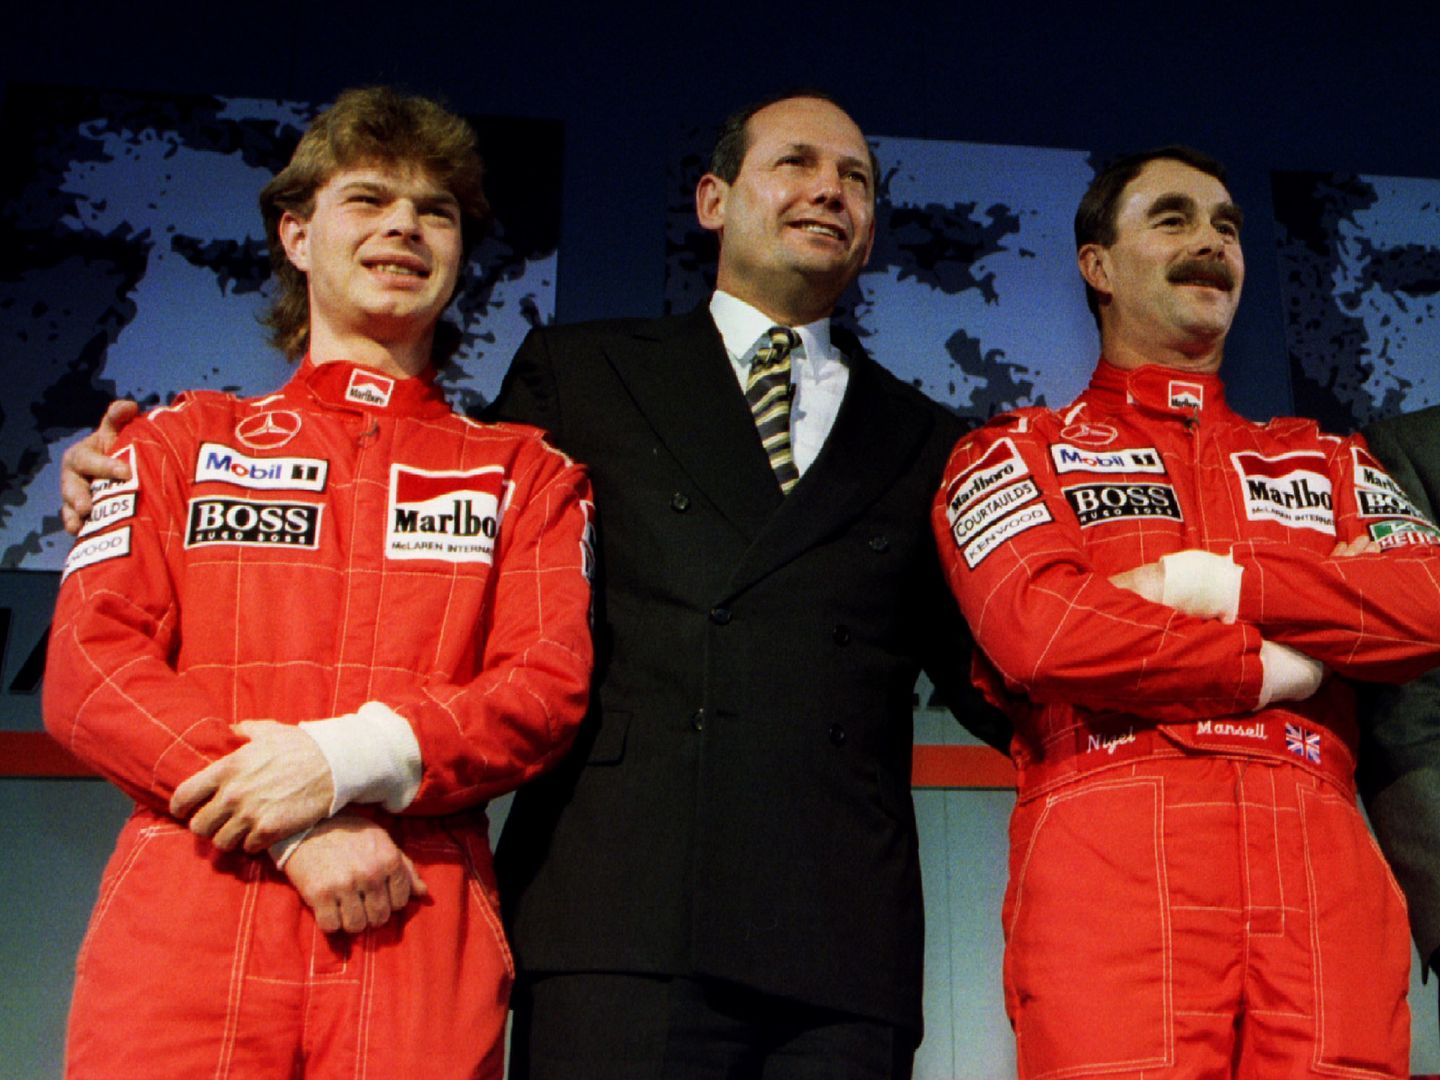 Ron Dennis, en el centro de la imagen, durante la presentación de McLaren en 1995